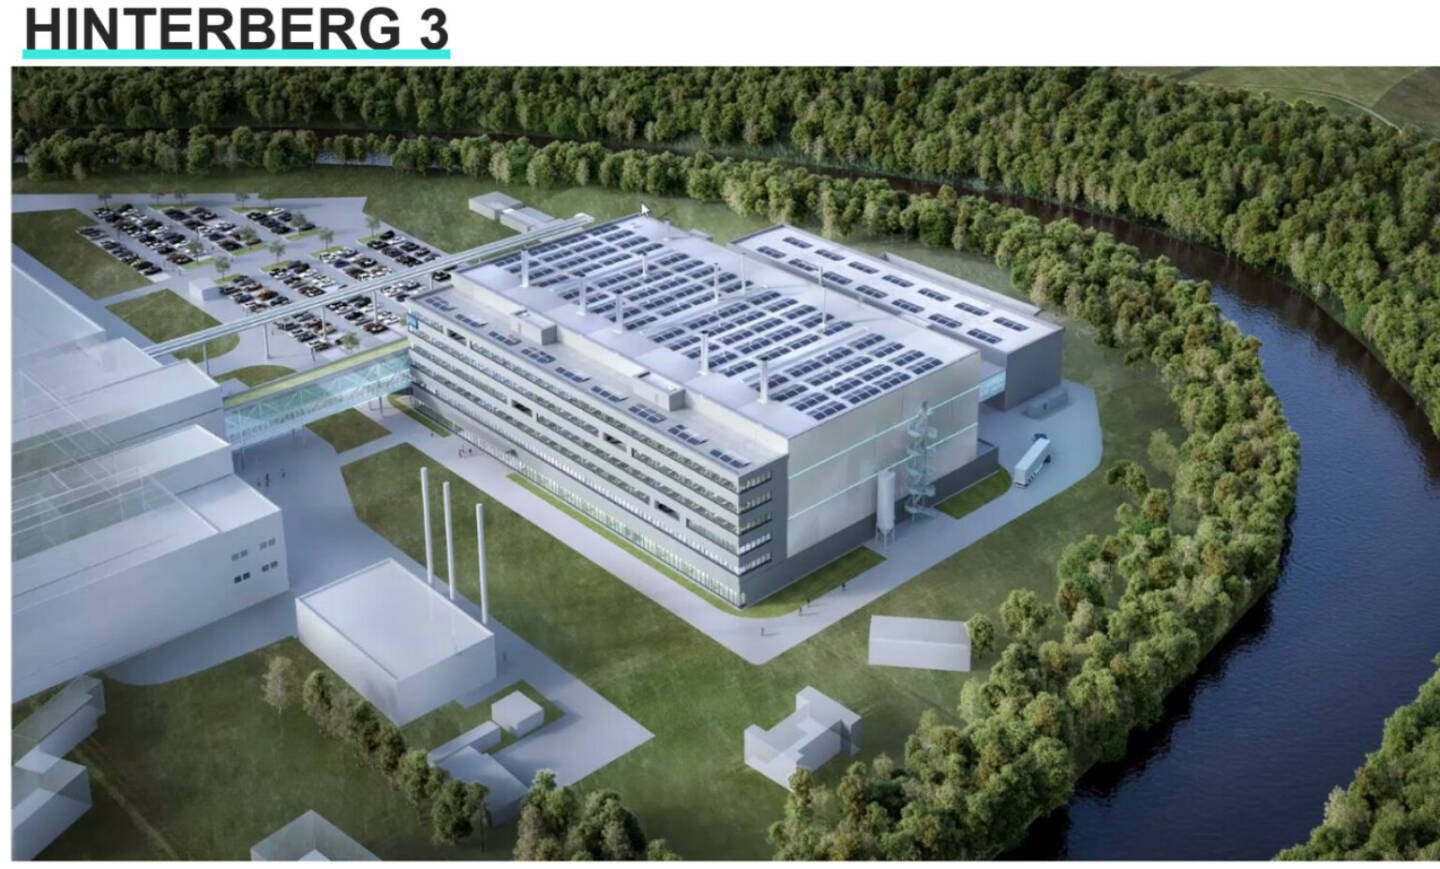 Baubeginn für neues AT&S-Forschungszentrum in Leoben,  Credit: AT&S